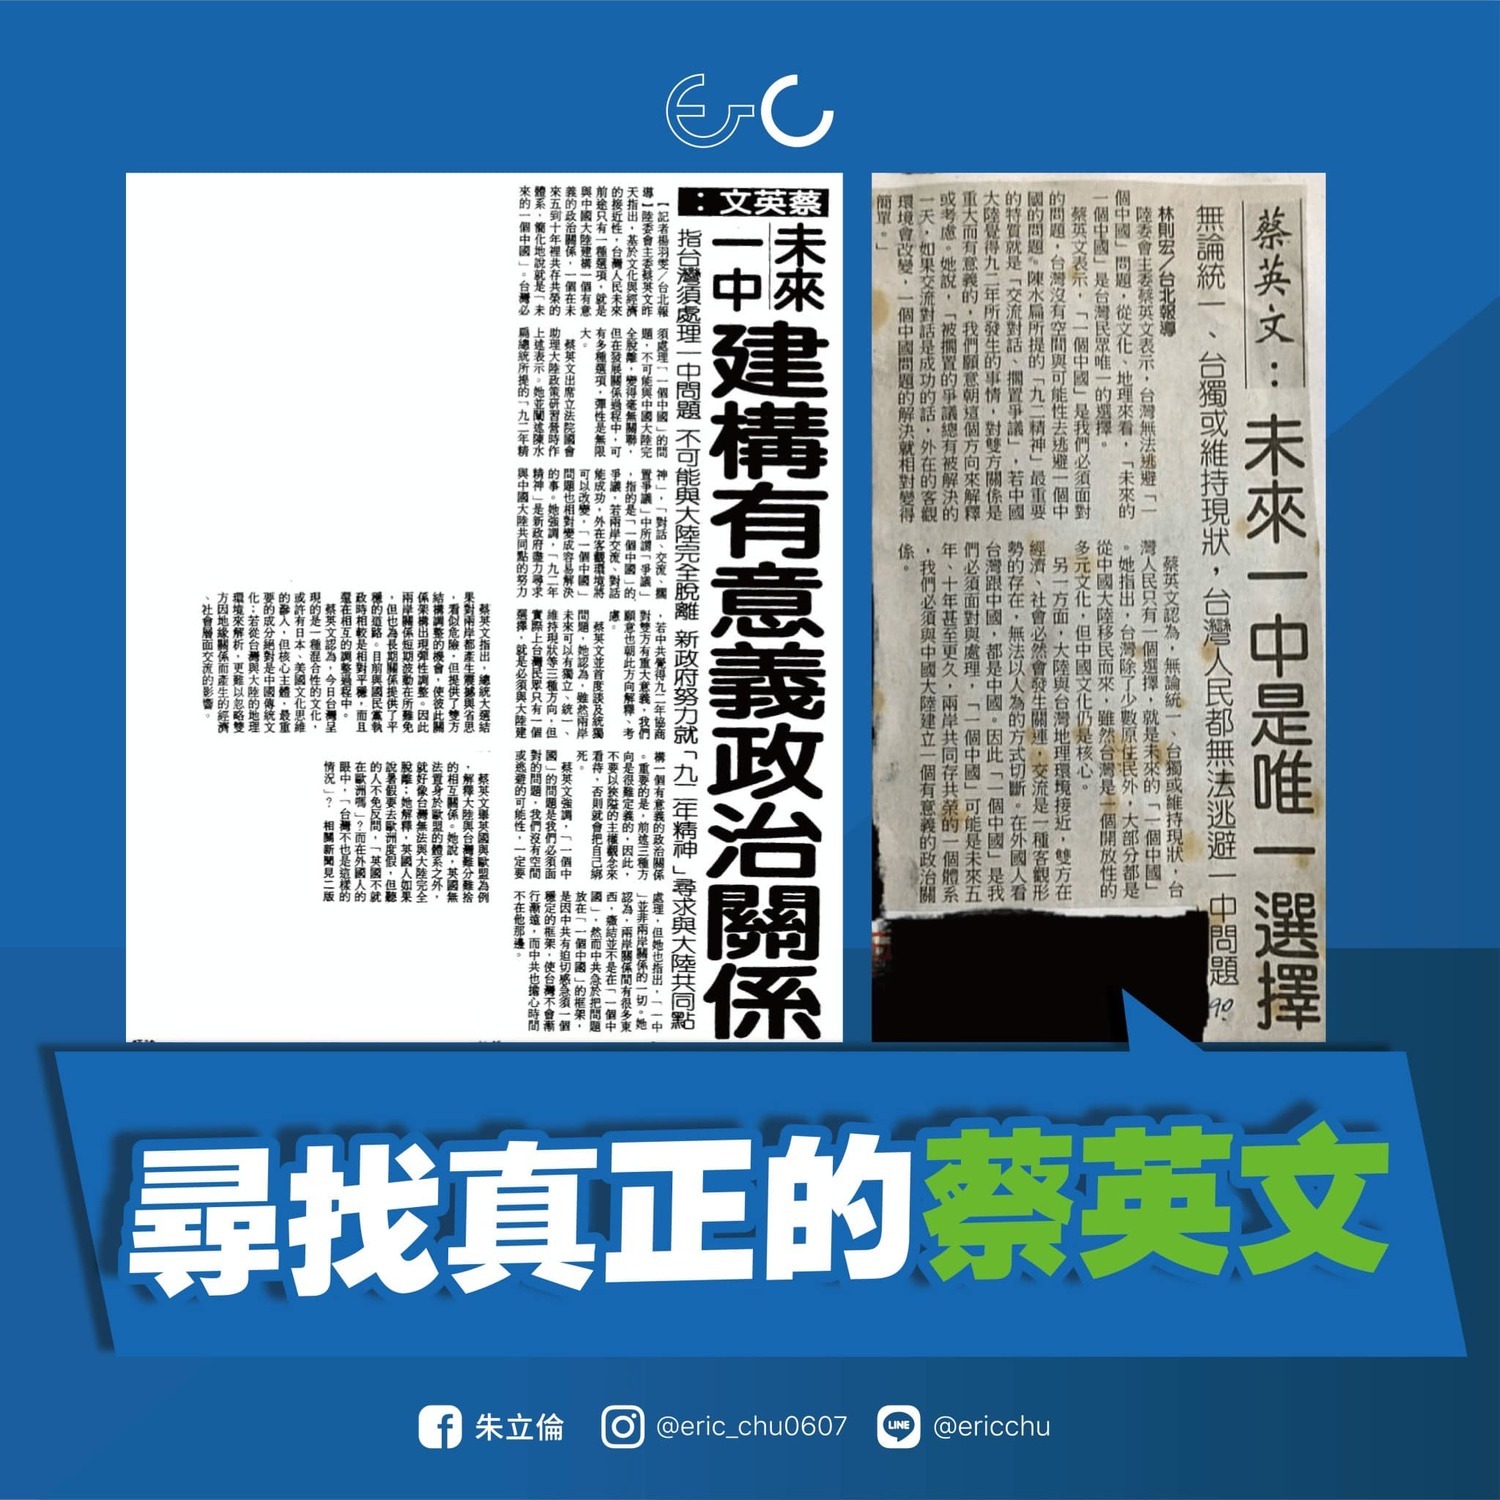 Re: [討論] 討厭民進黨希望中國快點武統台灣的人多嗎